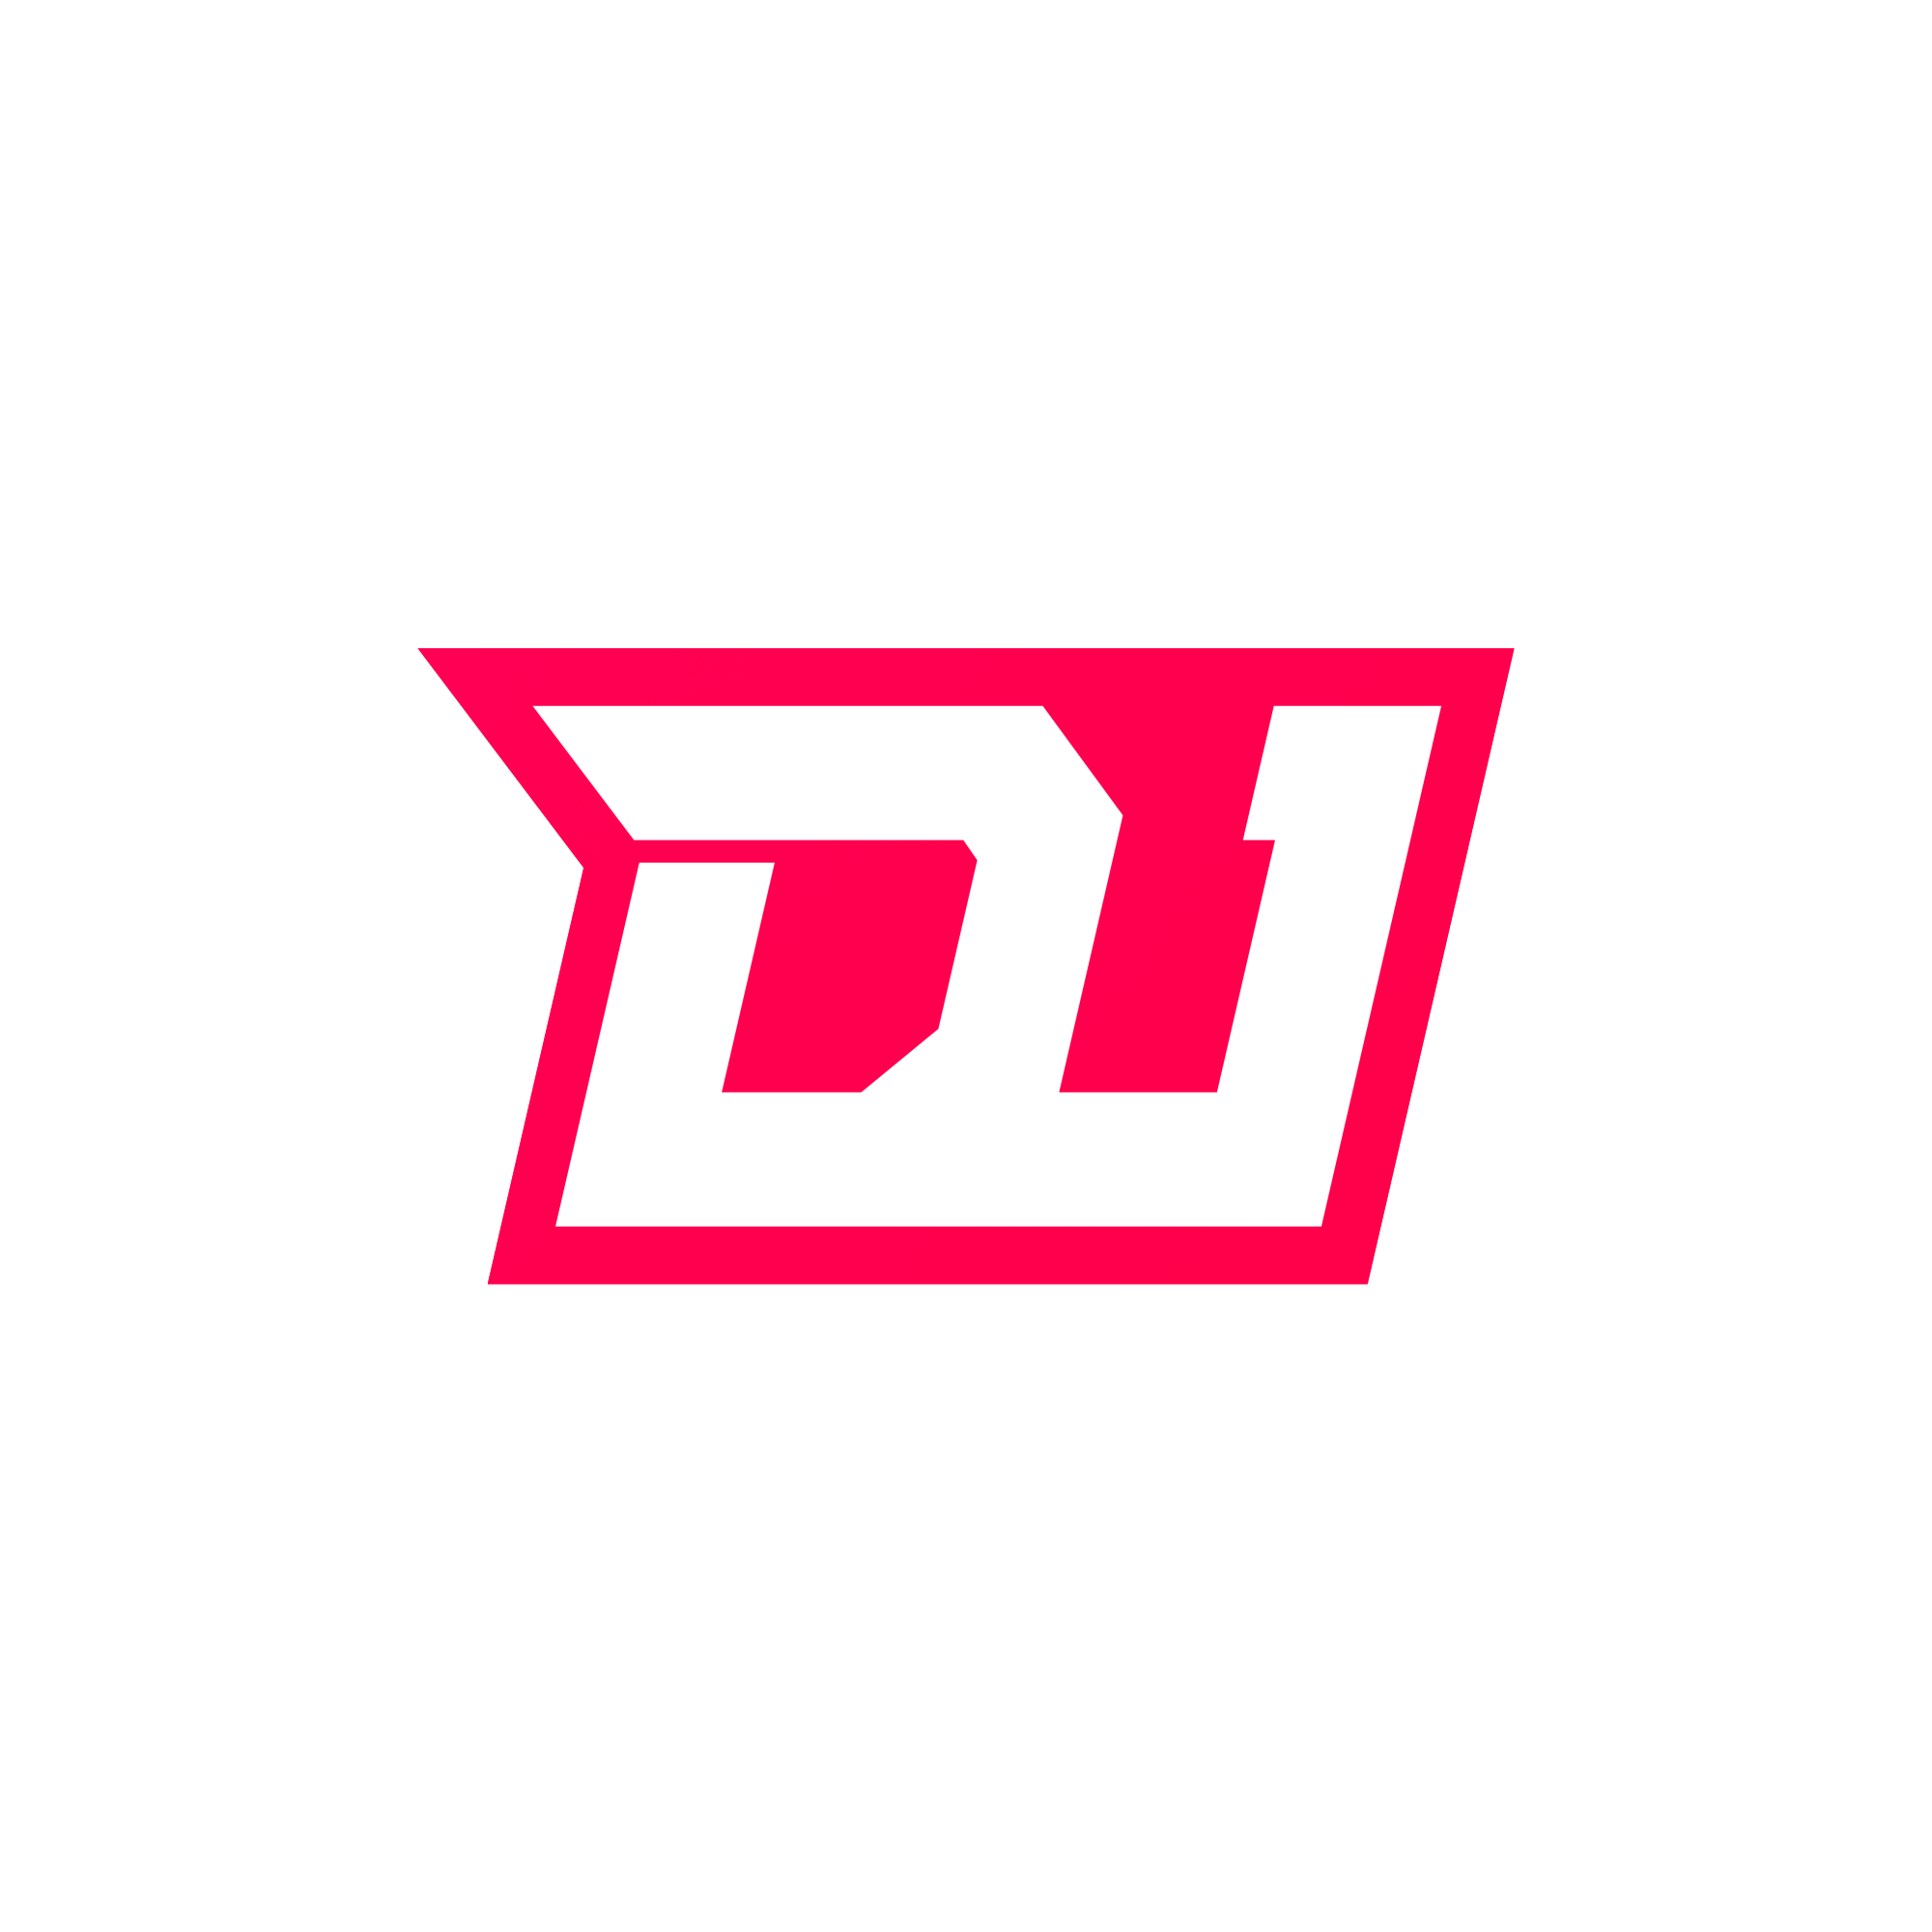 DU logo animation animation geometric icon logo minimal red